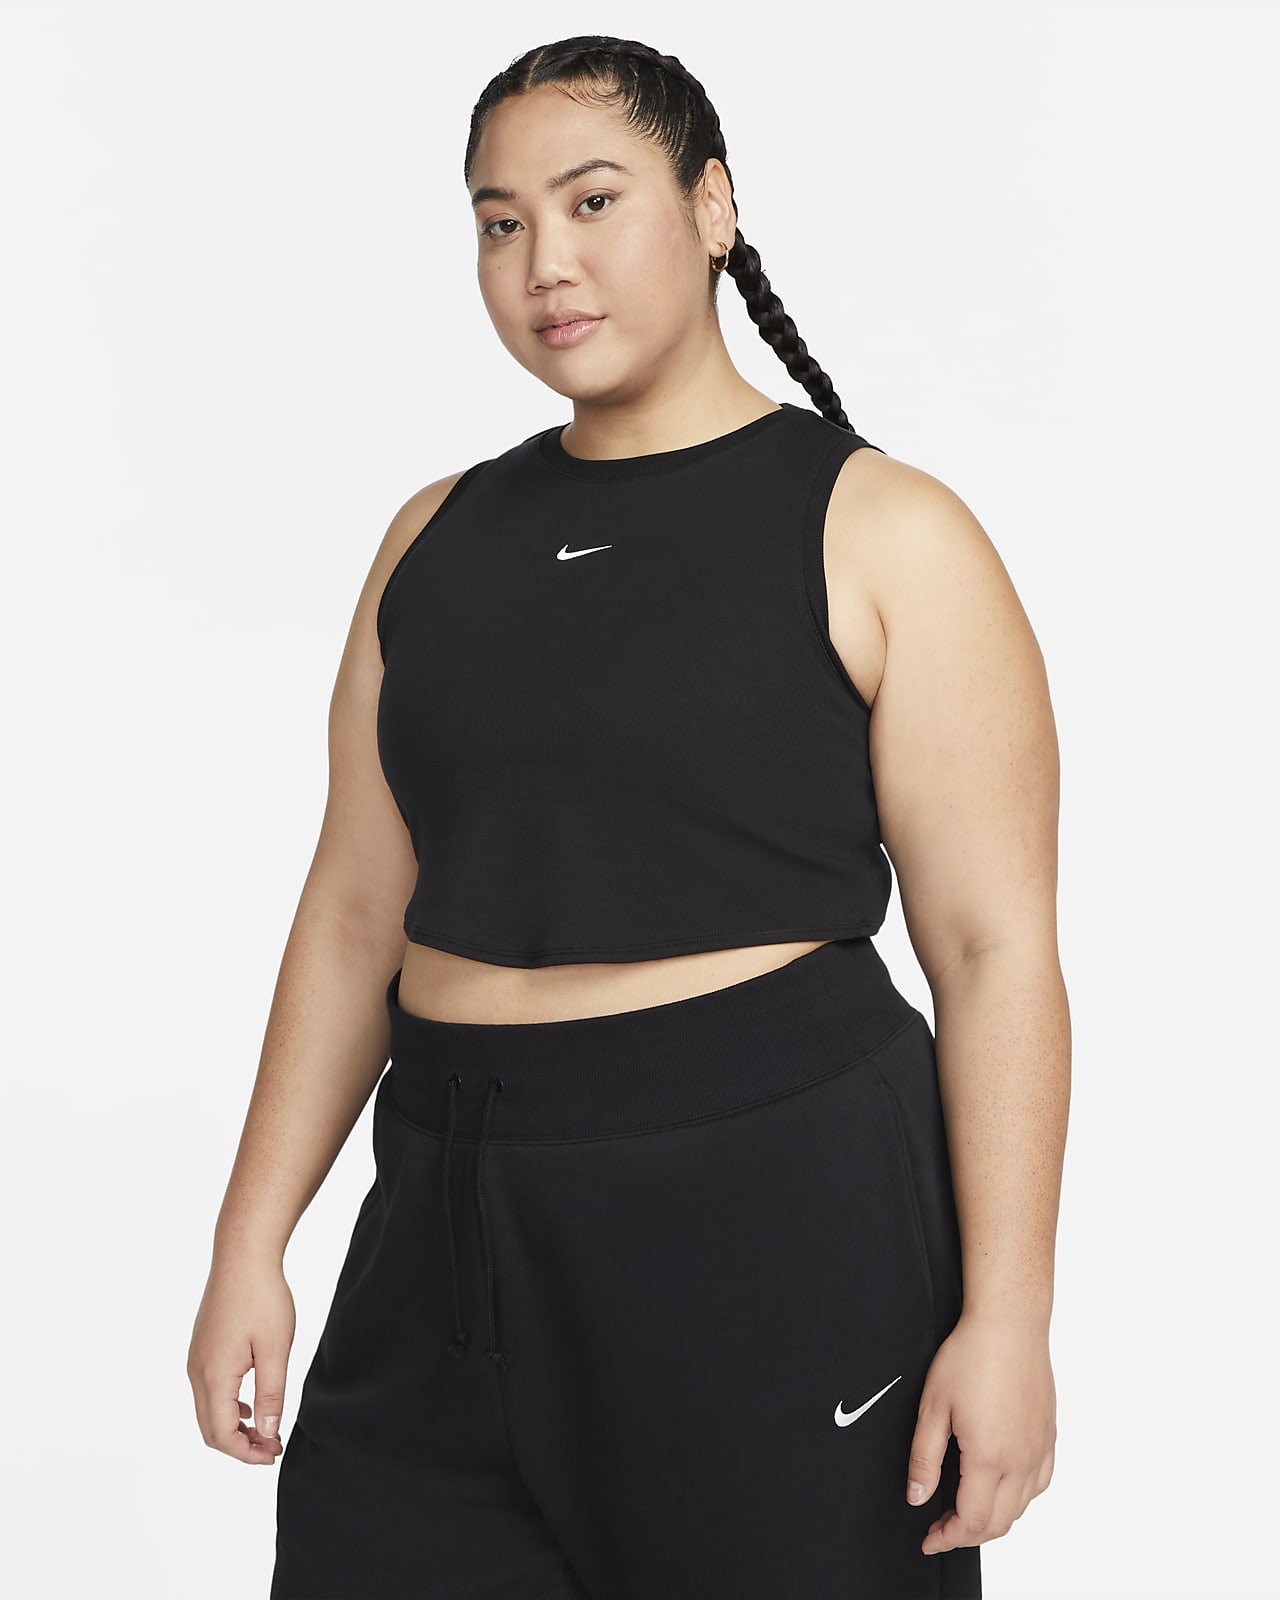 Canotta corta e aderente a mini costine Nike Sportswear Chill Knit (Plus size) – Donna